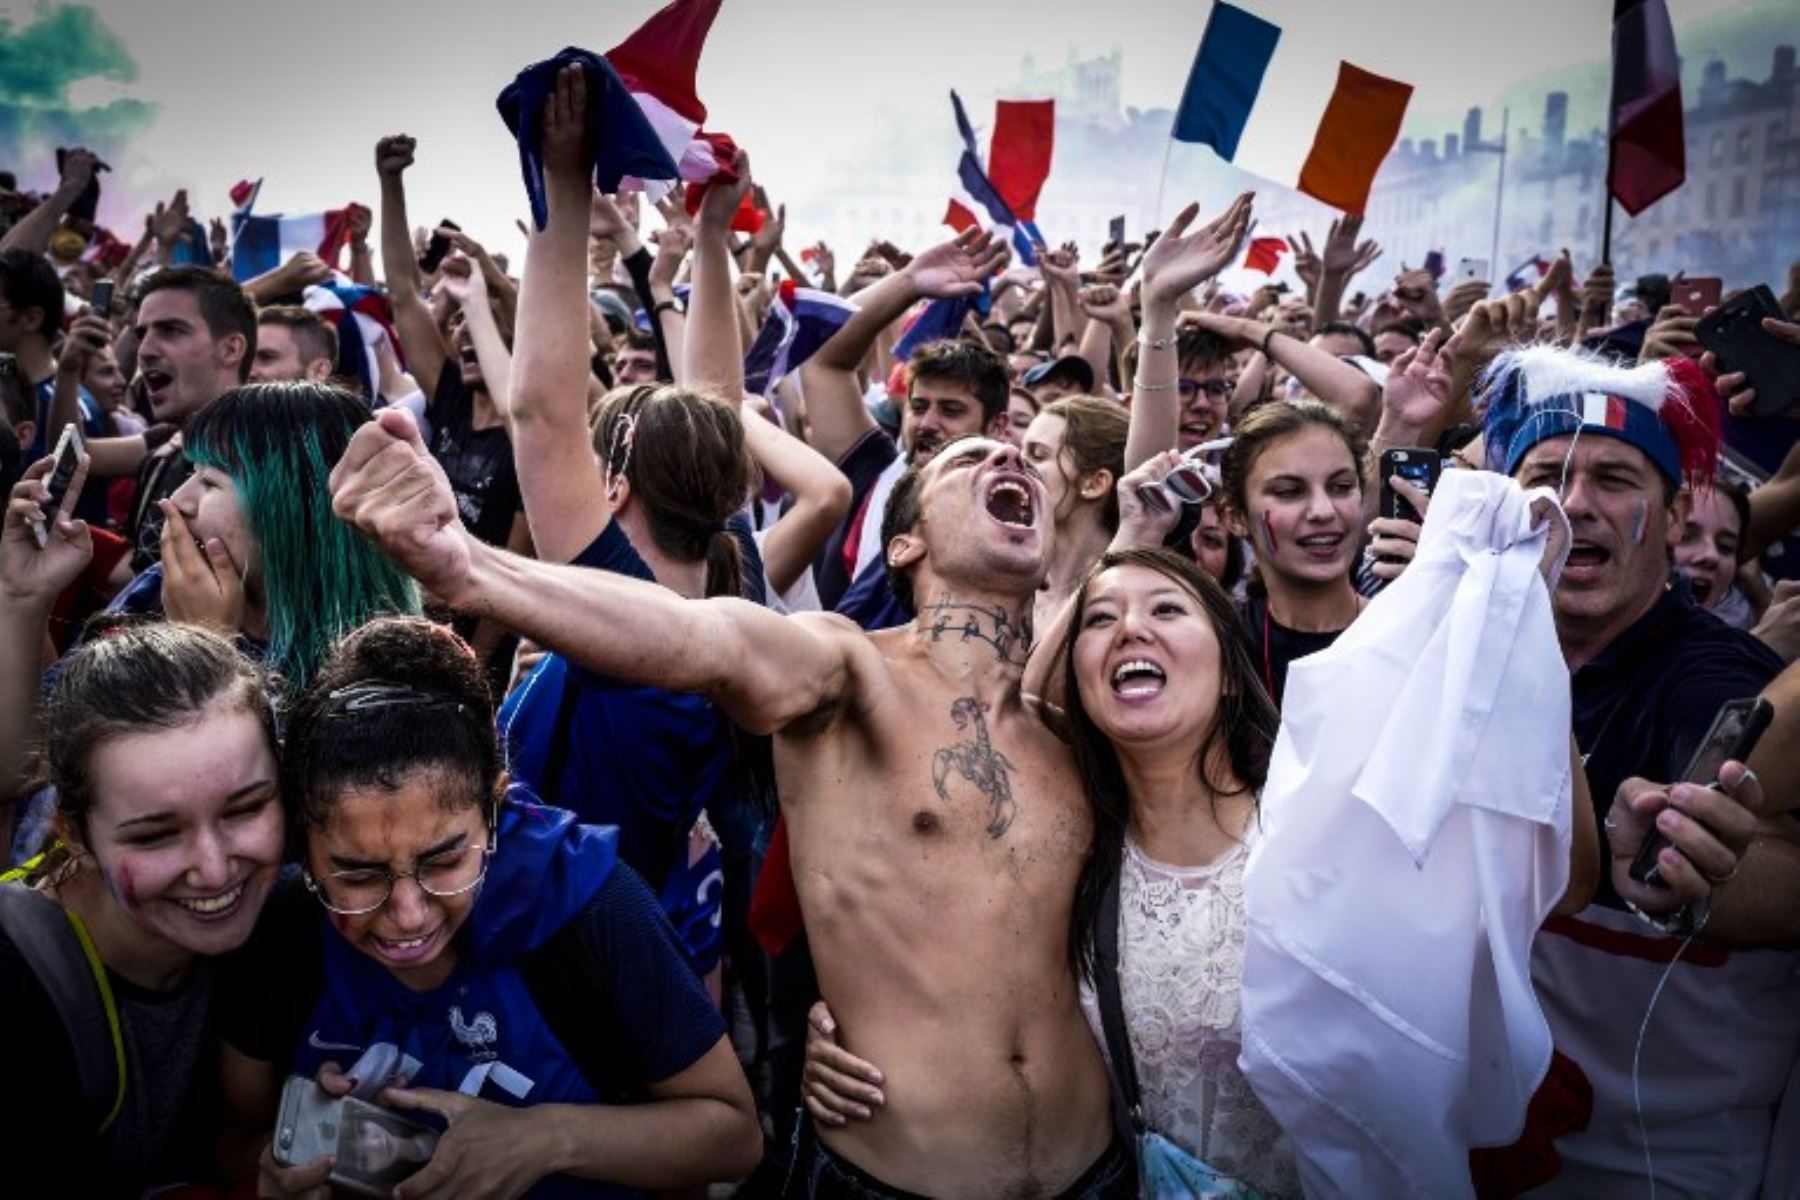 Partidarios de Francia celebran en Lyon el 15 de julio de 2018, después de que Francia ganara el partido de fútbol final de la Copa Mundial Rusia 2018 entre Francia y Croacia.Foto:AFP